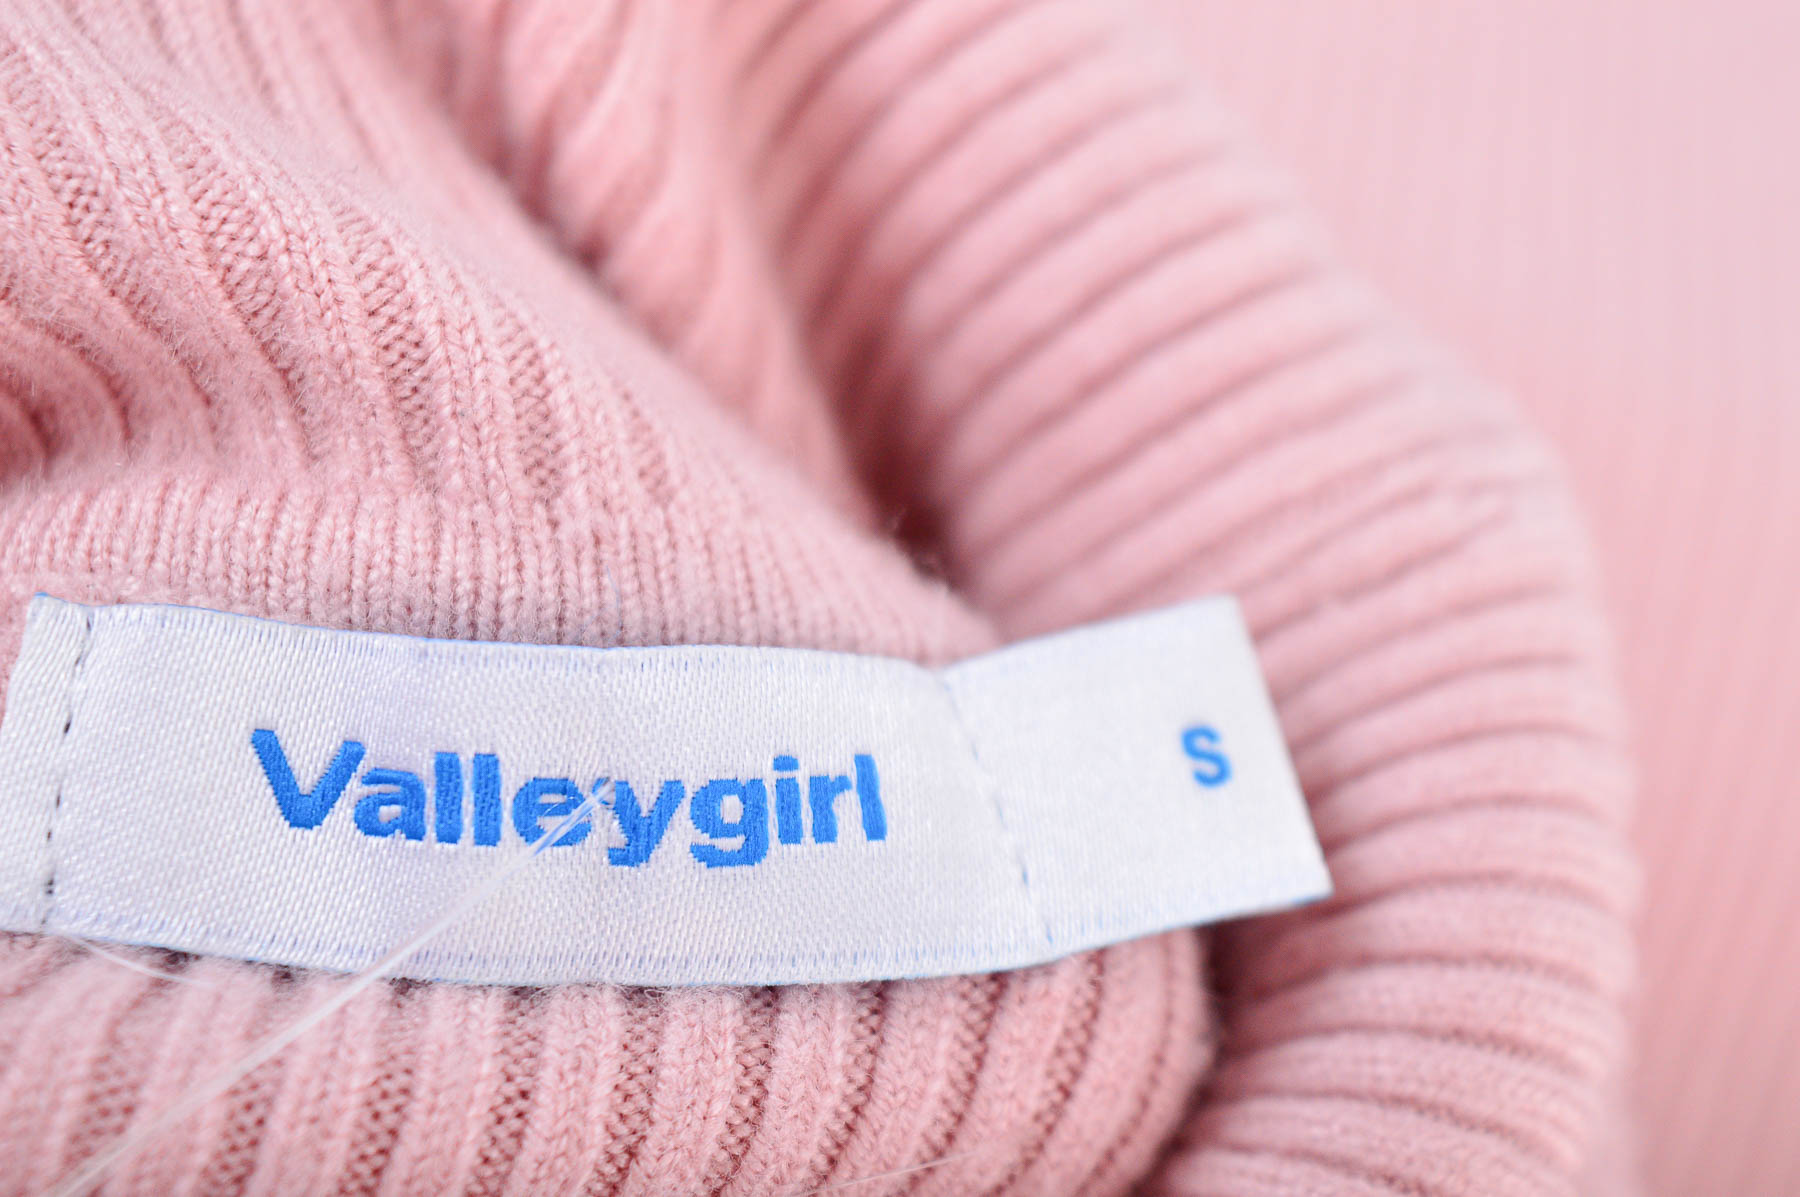 Дамски пуловер - Valleygirl - 2